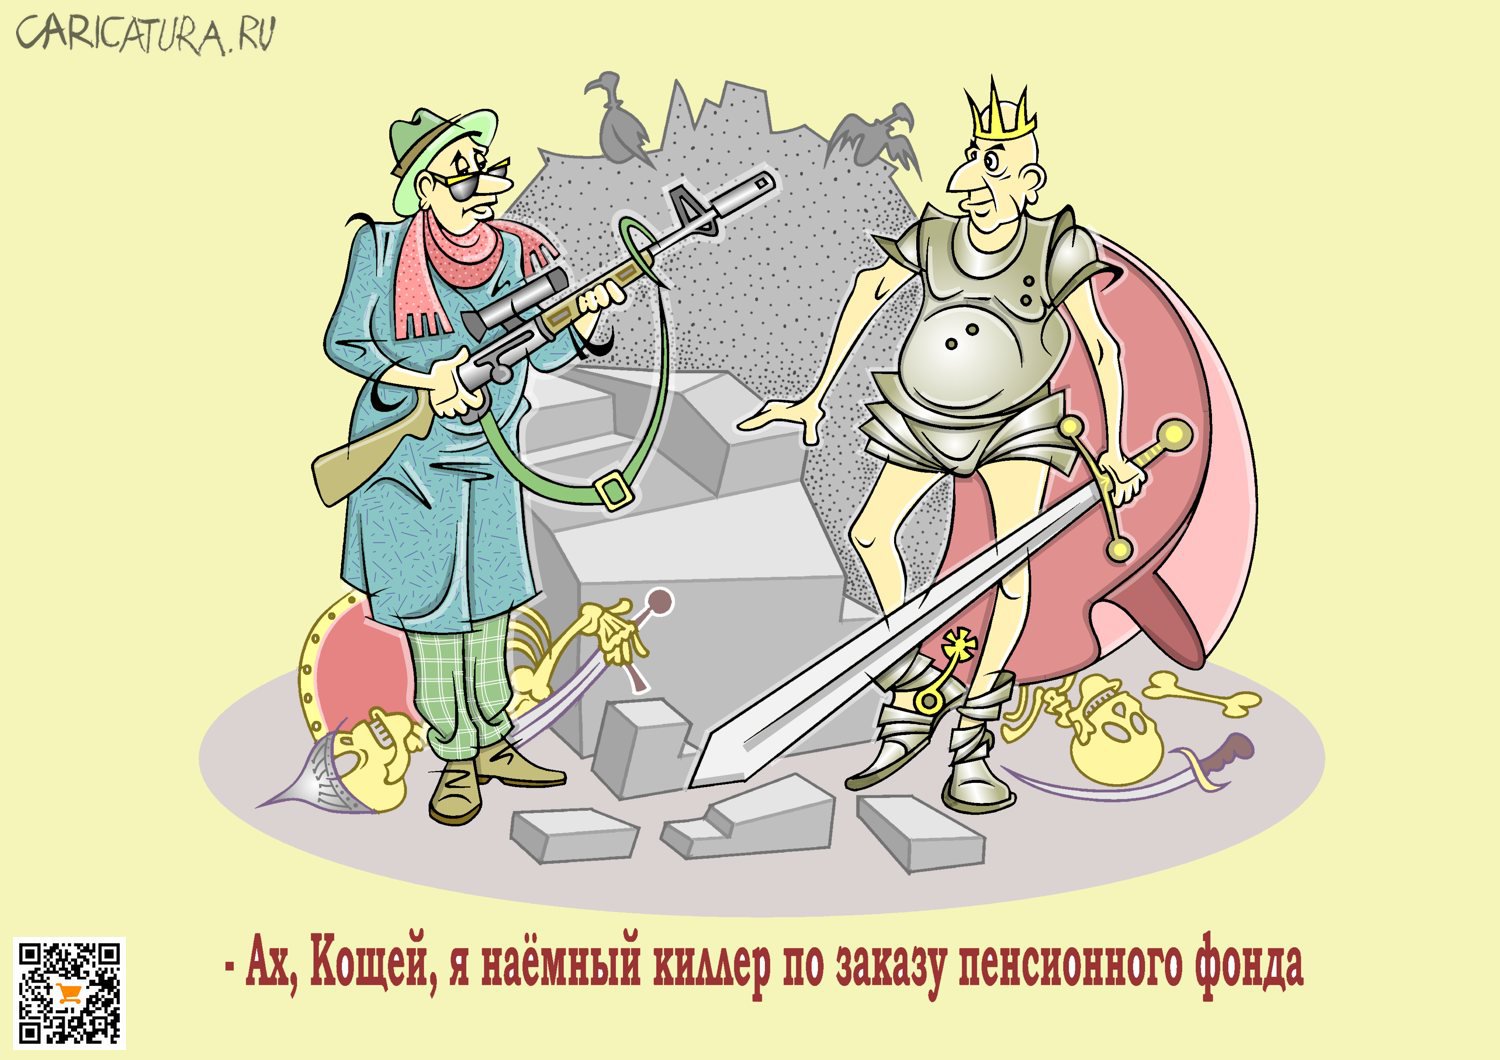 Карикатура "Ради экономии средств", Виталий Маслов